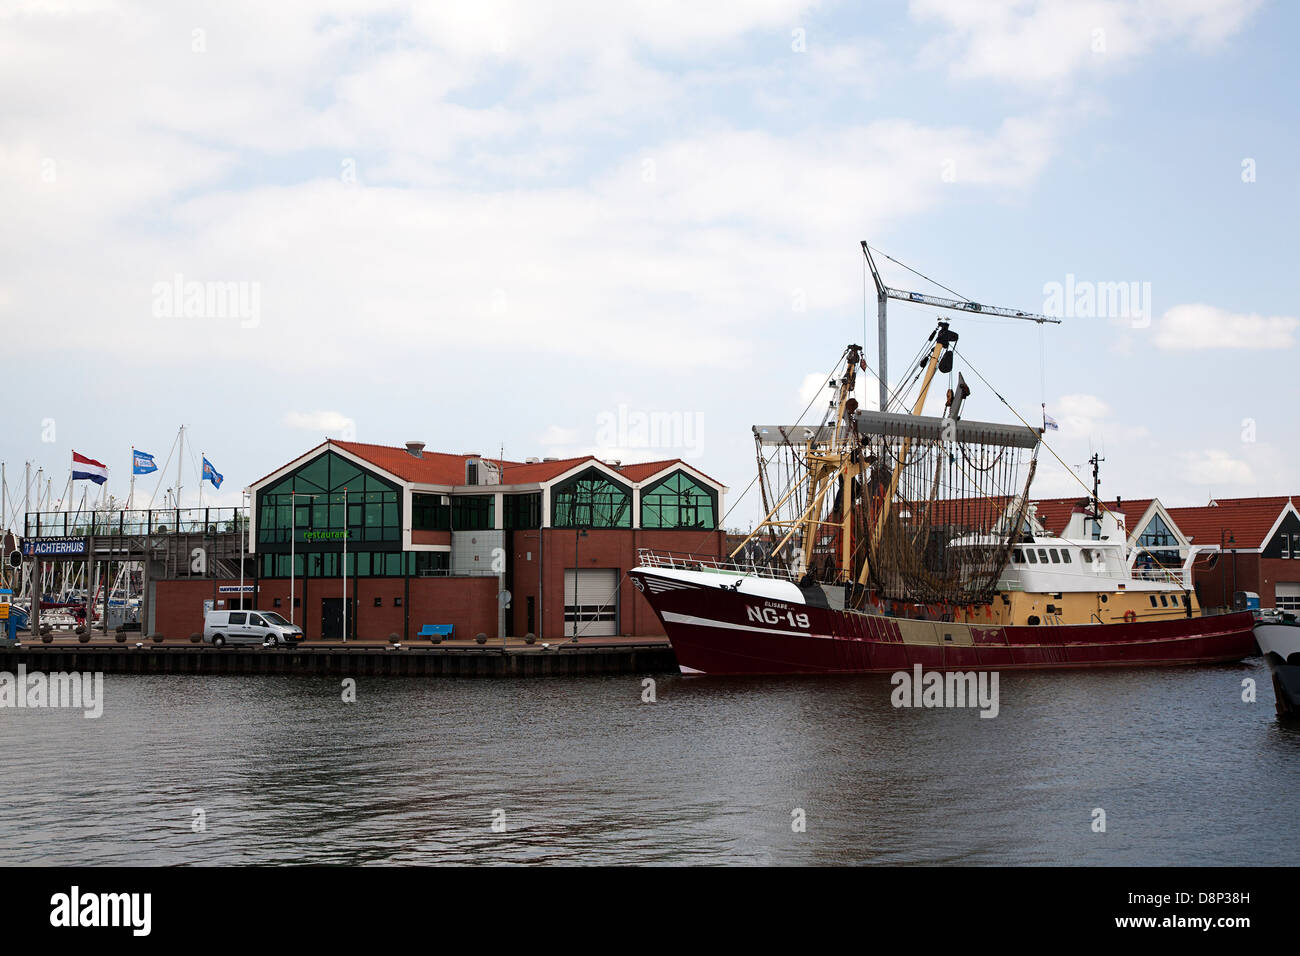 La pesca in barca nel porto del villaggio di pescatori Urk, Flevoland, Paesi Bassi Foto Stock